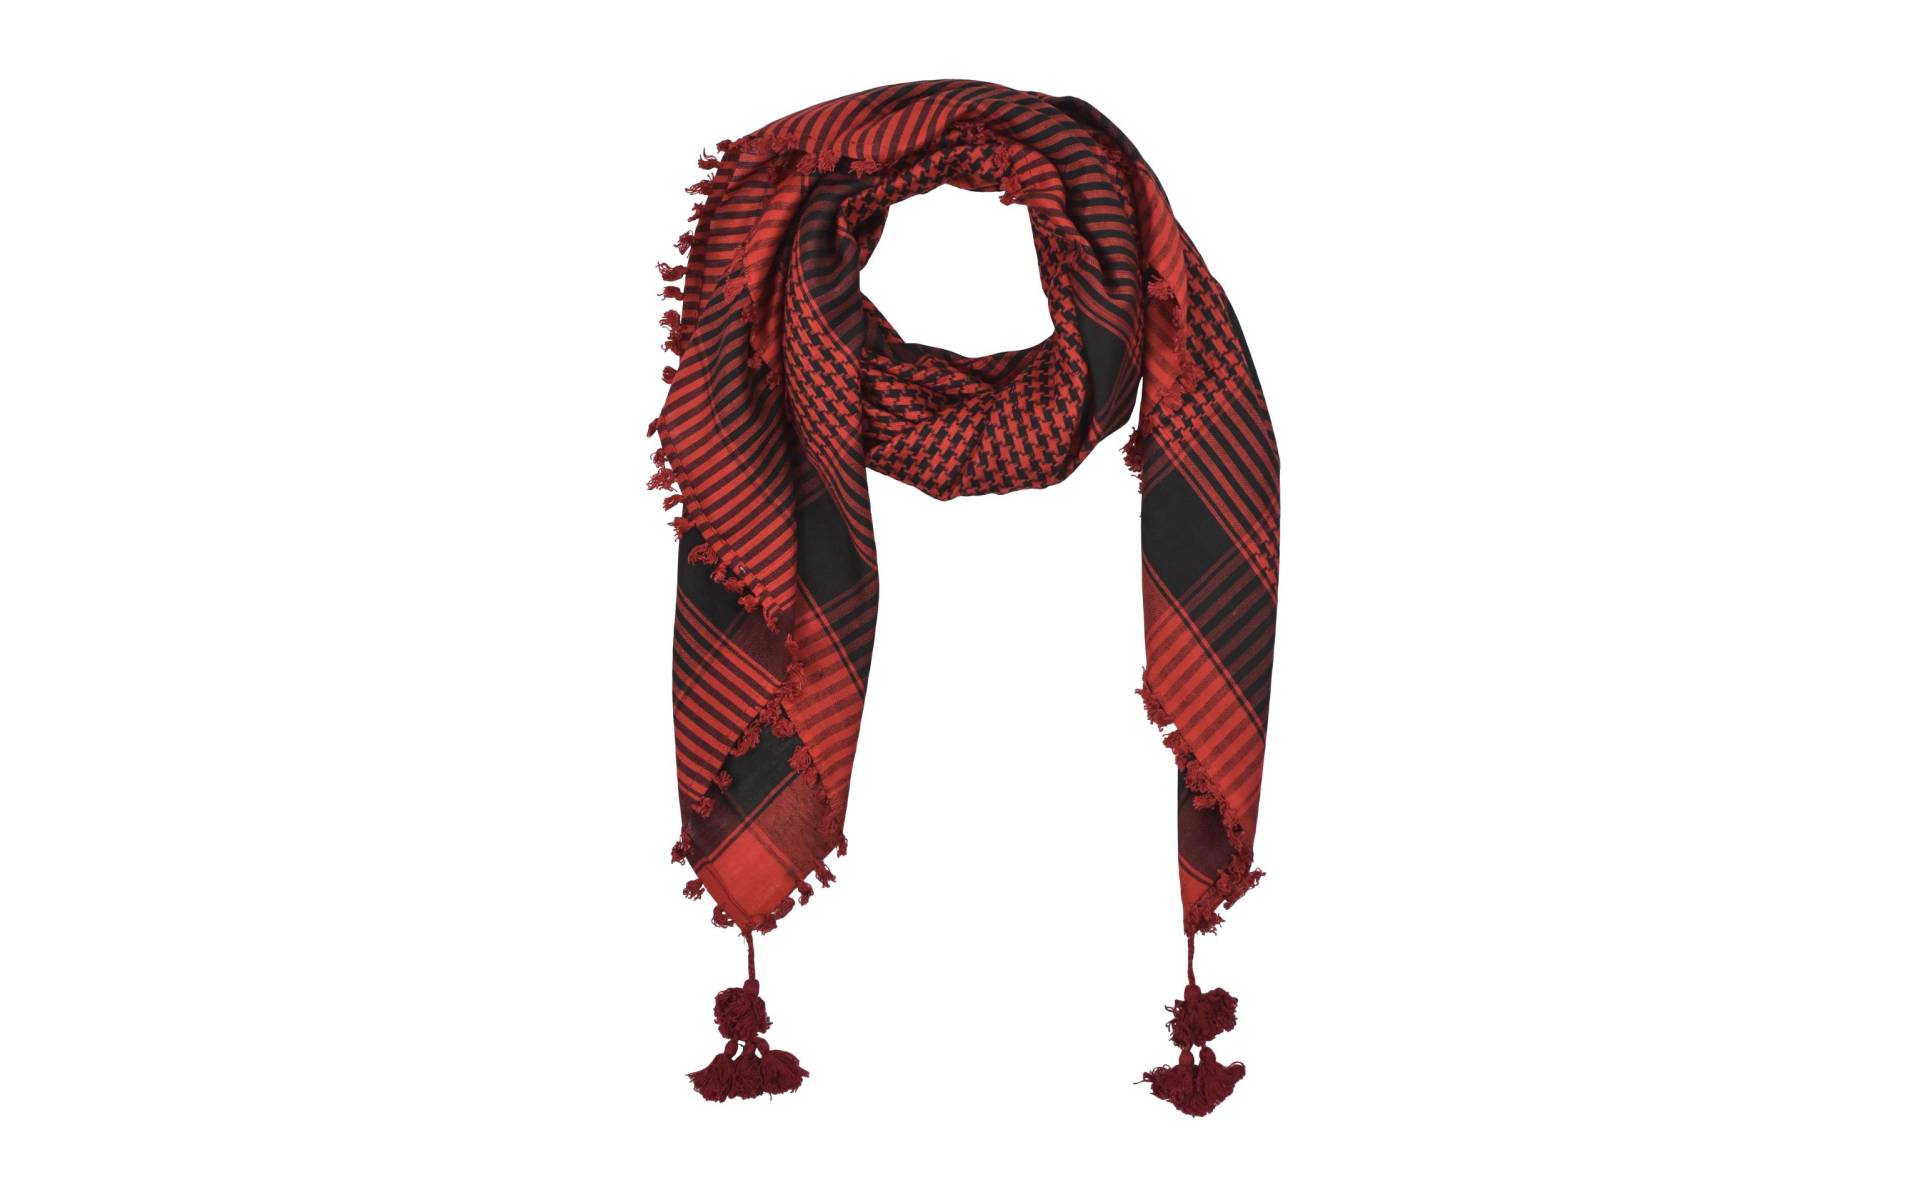 Šatka, "Palestína", viskóza, červeno-čierny, strapce, cca 120*120cm